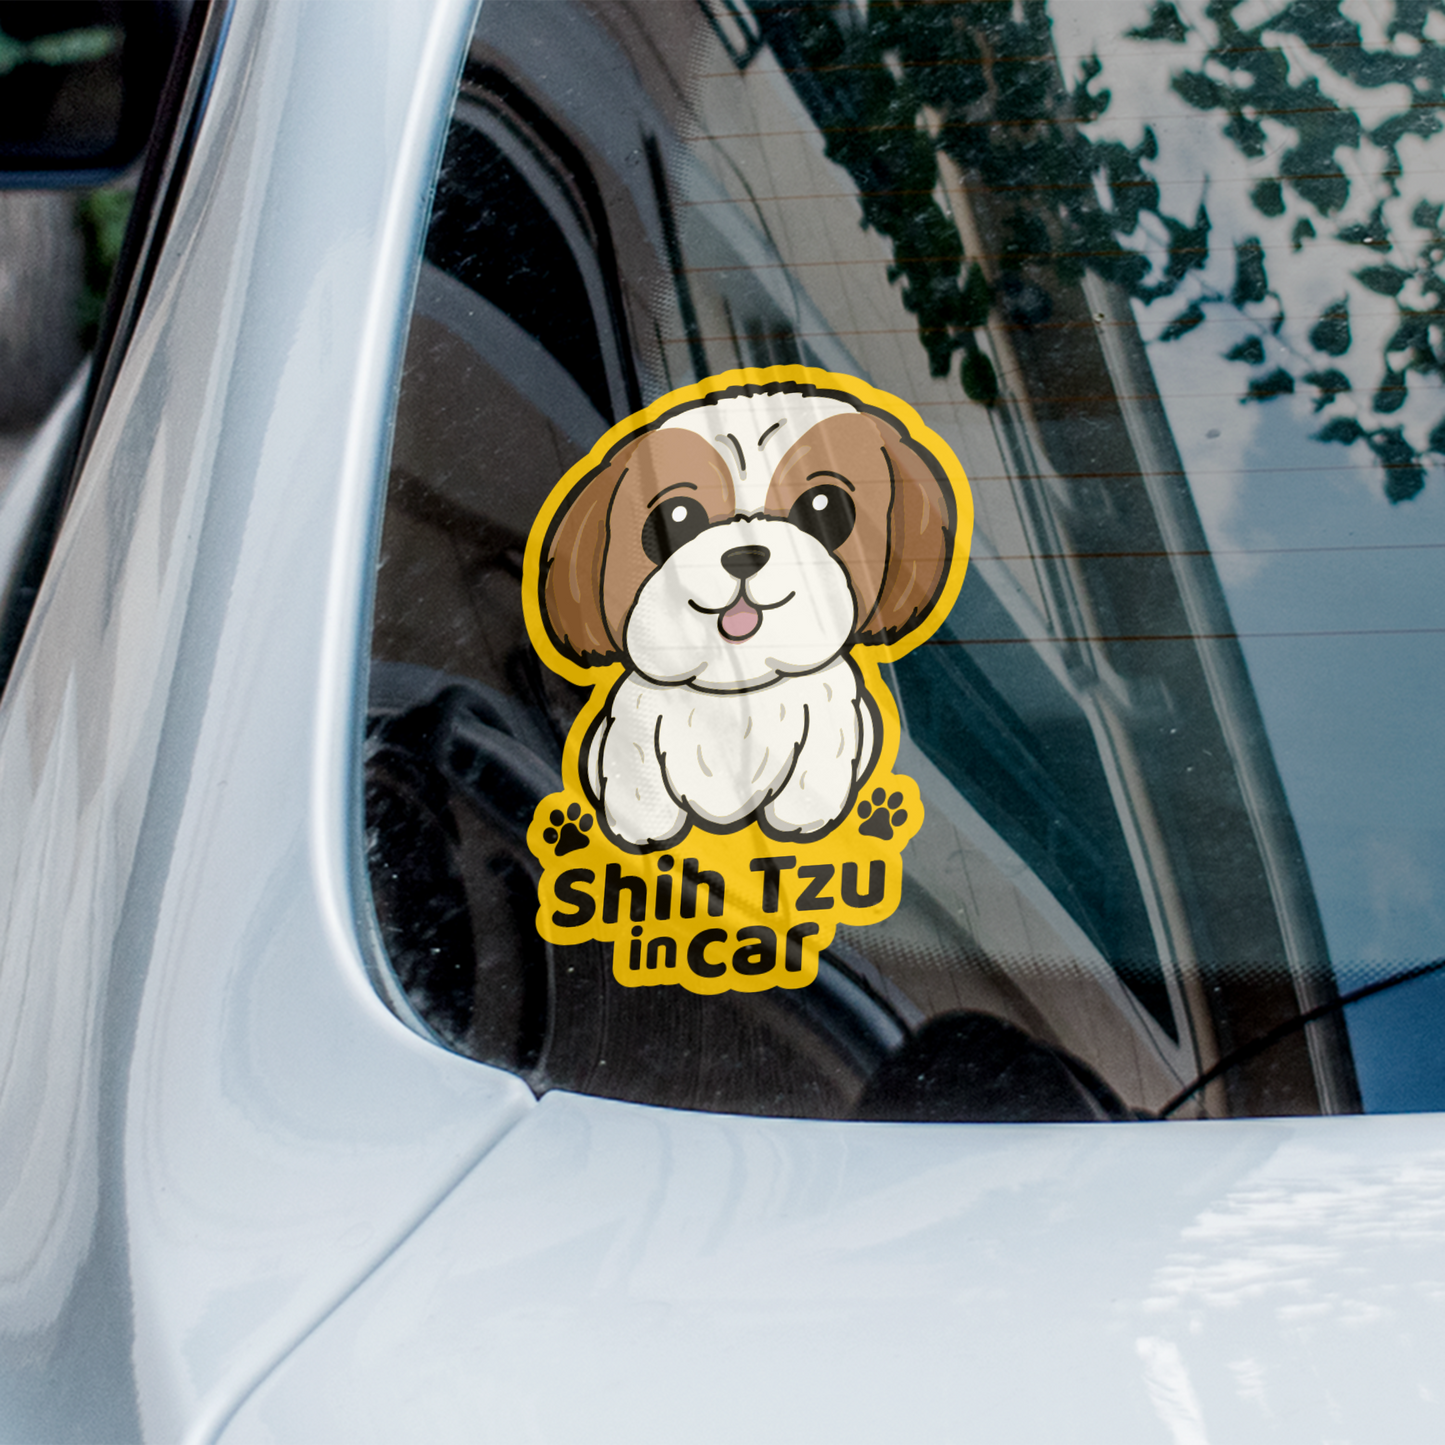 Shih Tzu Car Sticker, Cute Shih Tzu Dog Vinyl Sticker, Sticks On The Inside Facing Out